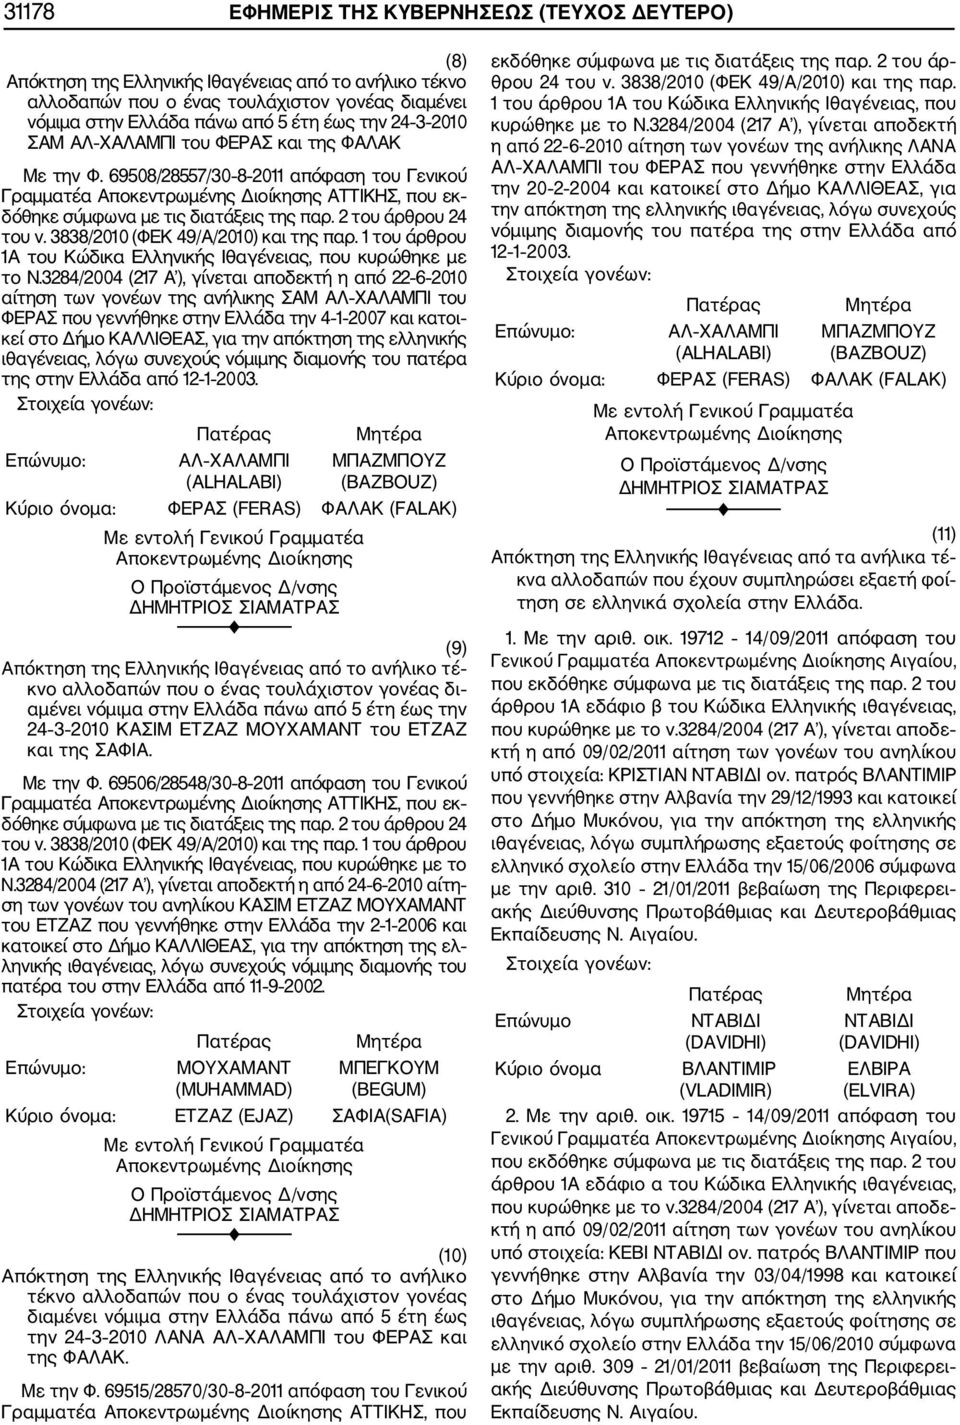 3838/2010 (ΦΕΚ 49/Α/2010) και της παρ. 1 του άρθρου 1Α του Κώδικα Ελληνικής Ιθαγένειας, που κυρώθηκε με το Ν.